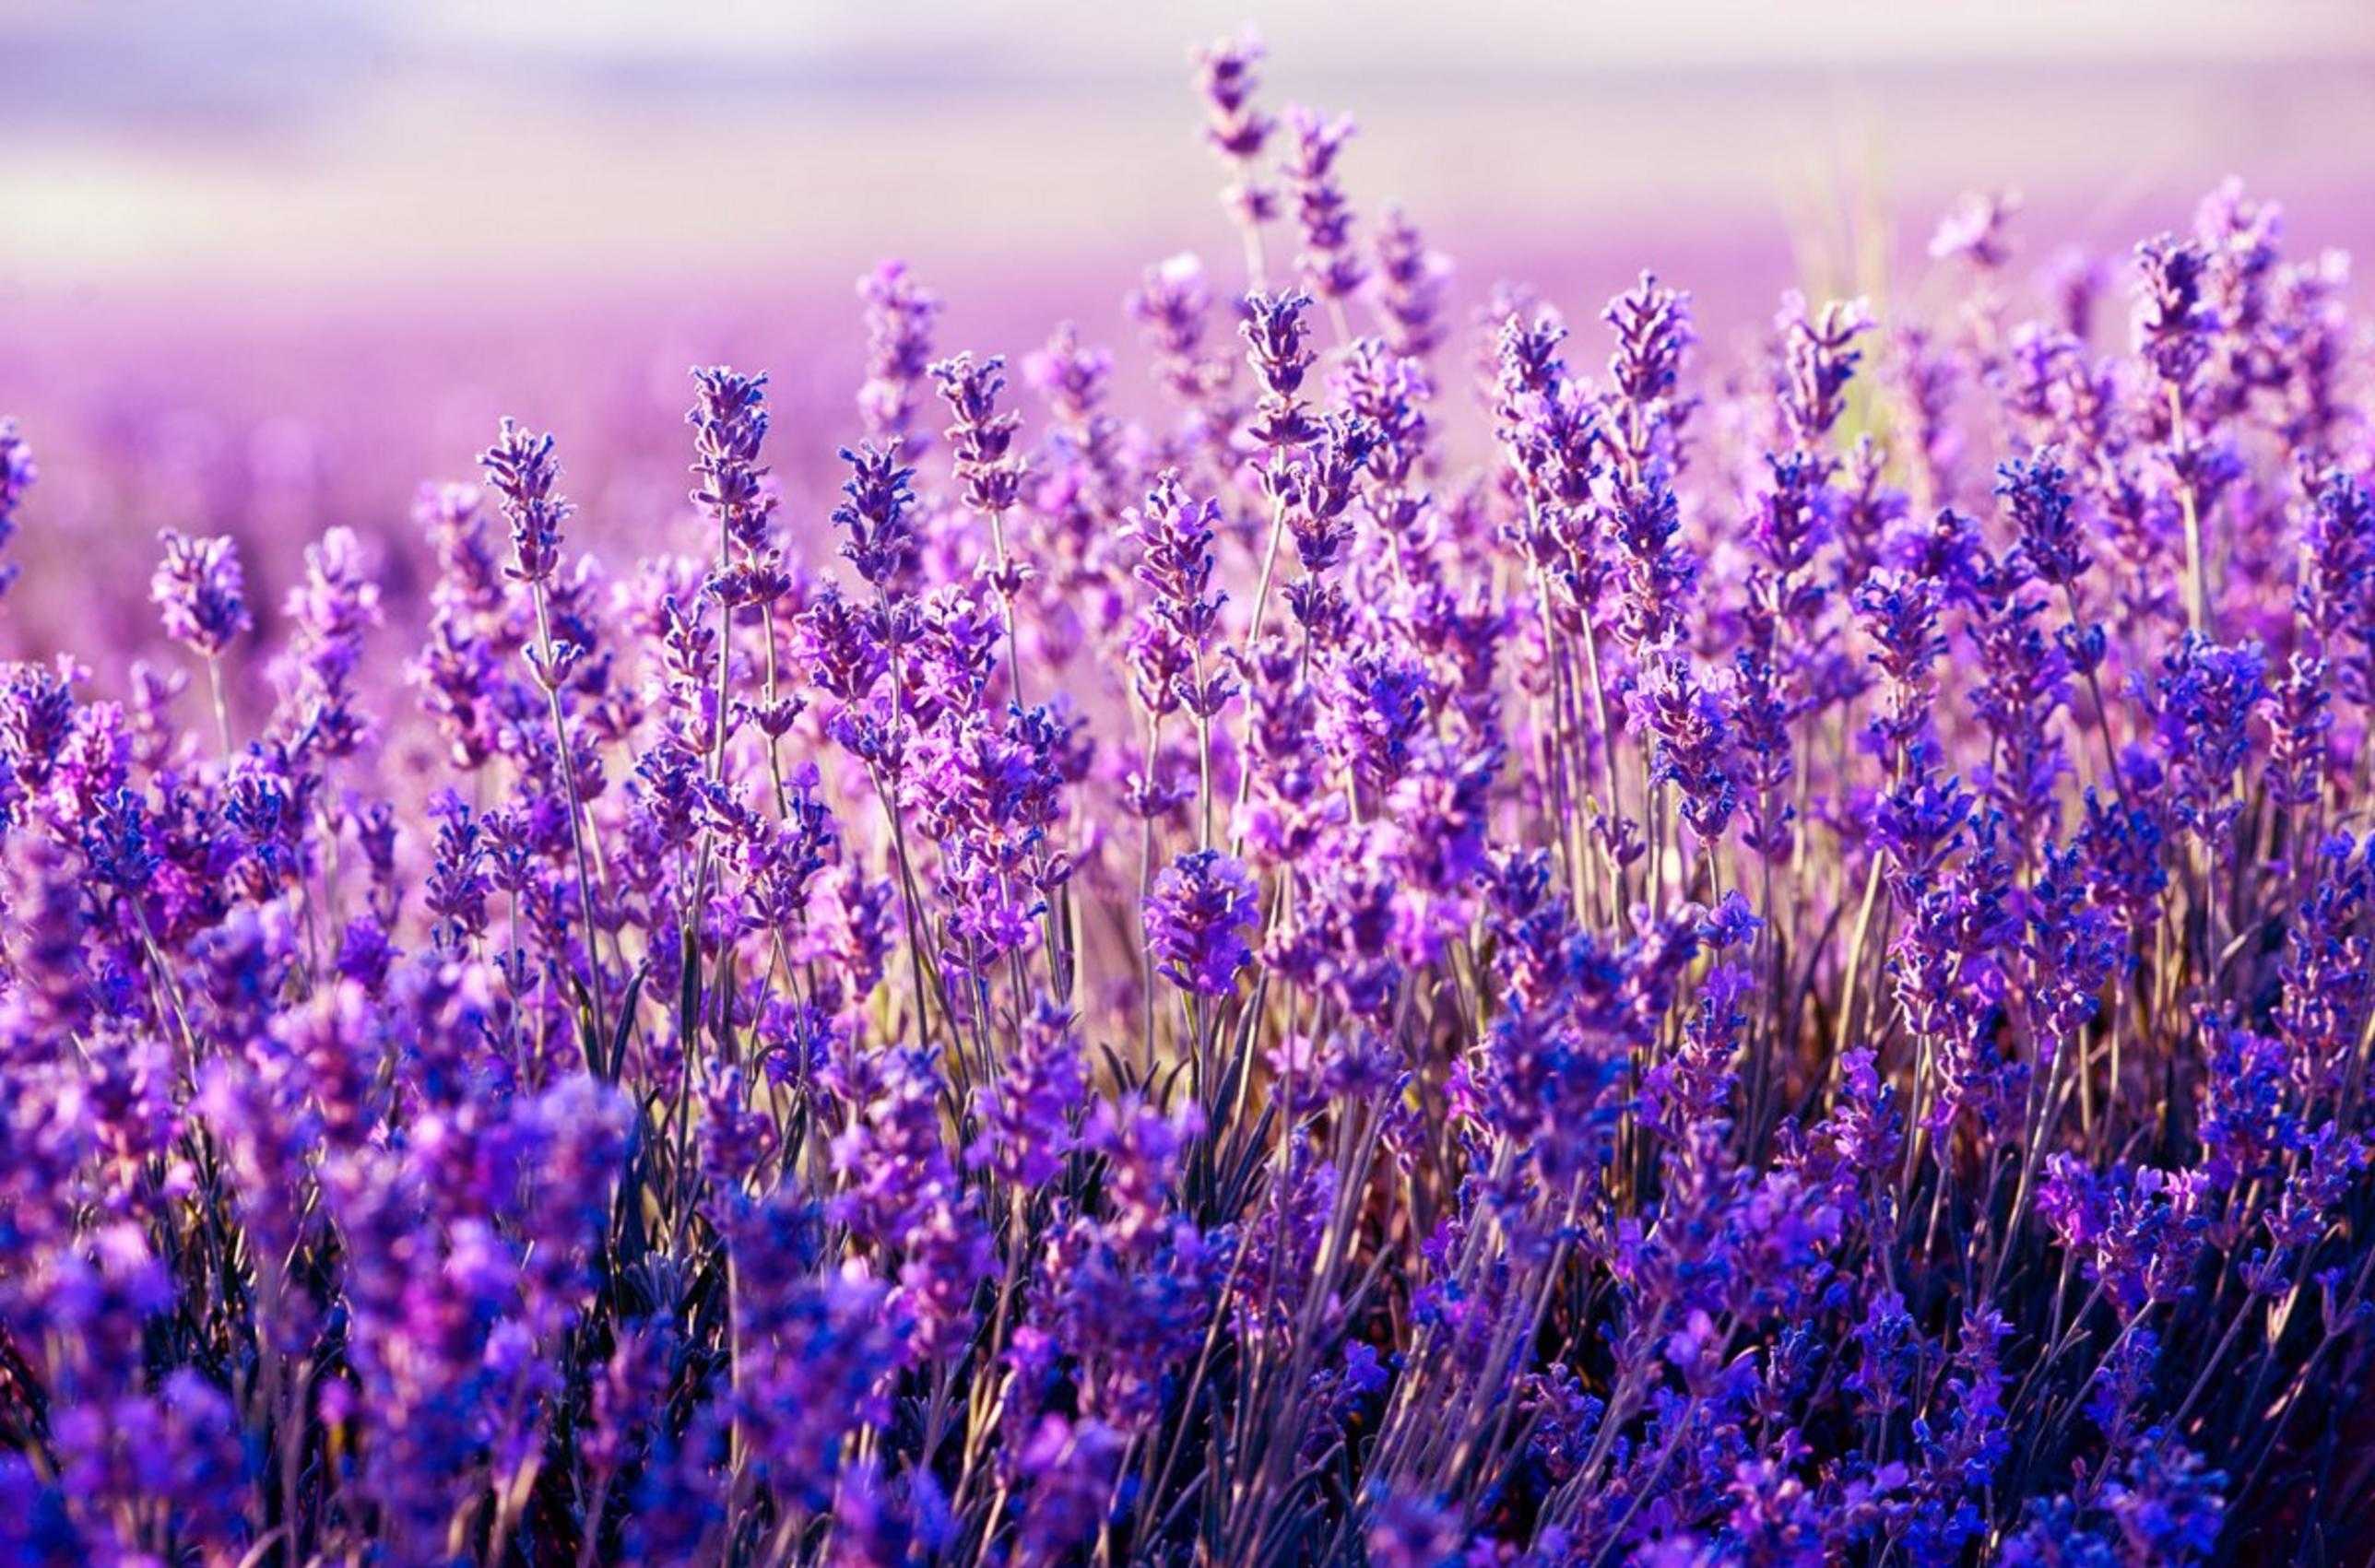 Hình nền lavender sẽ mang đến cho bạn một không gian làm việc hoàn hảo, với màu tím nhạt trẻ trung và tinh tế. Hãy xem hình ảnh này để được cảm nhận sự tươi mới và độc đáo mà mẫu hình này mang lại.